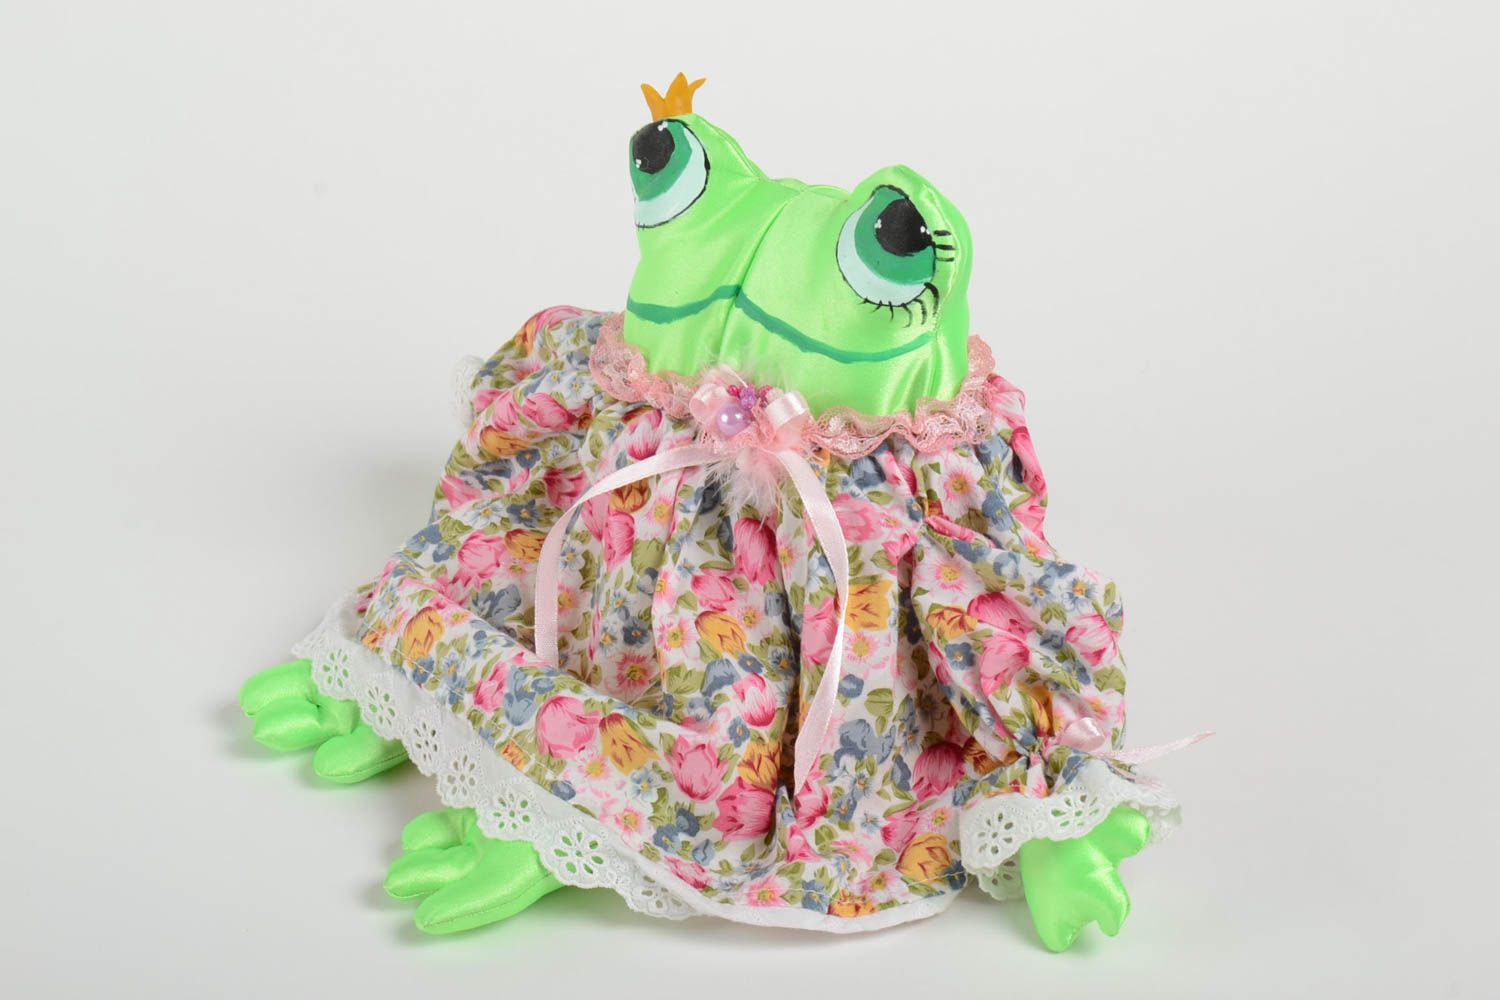 Handmade Frosch Stofftier Kinder Spielzeug Geschenk Idee klein bunt originell foto 5